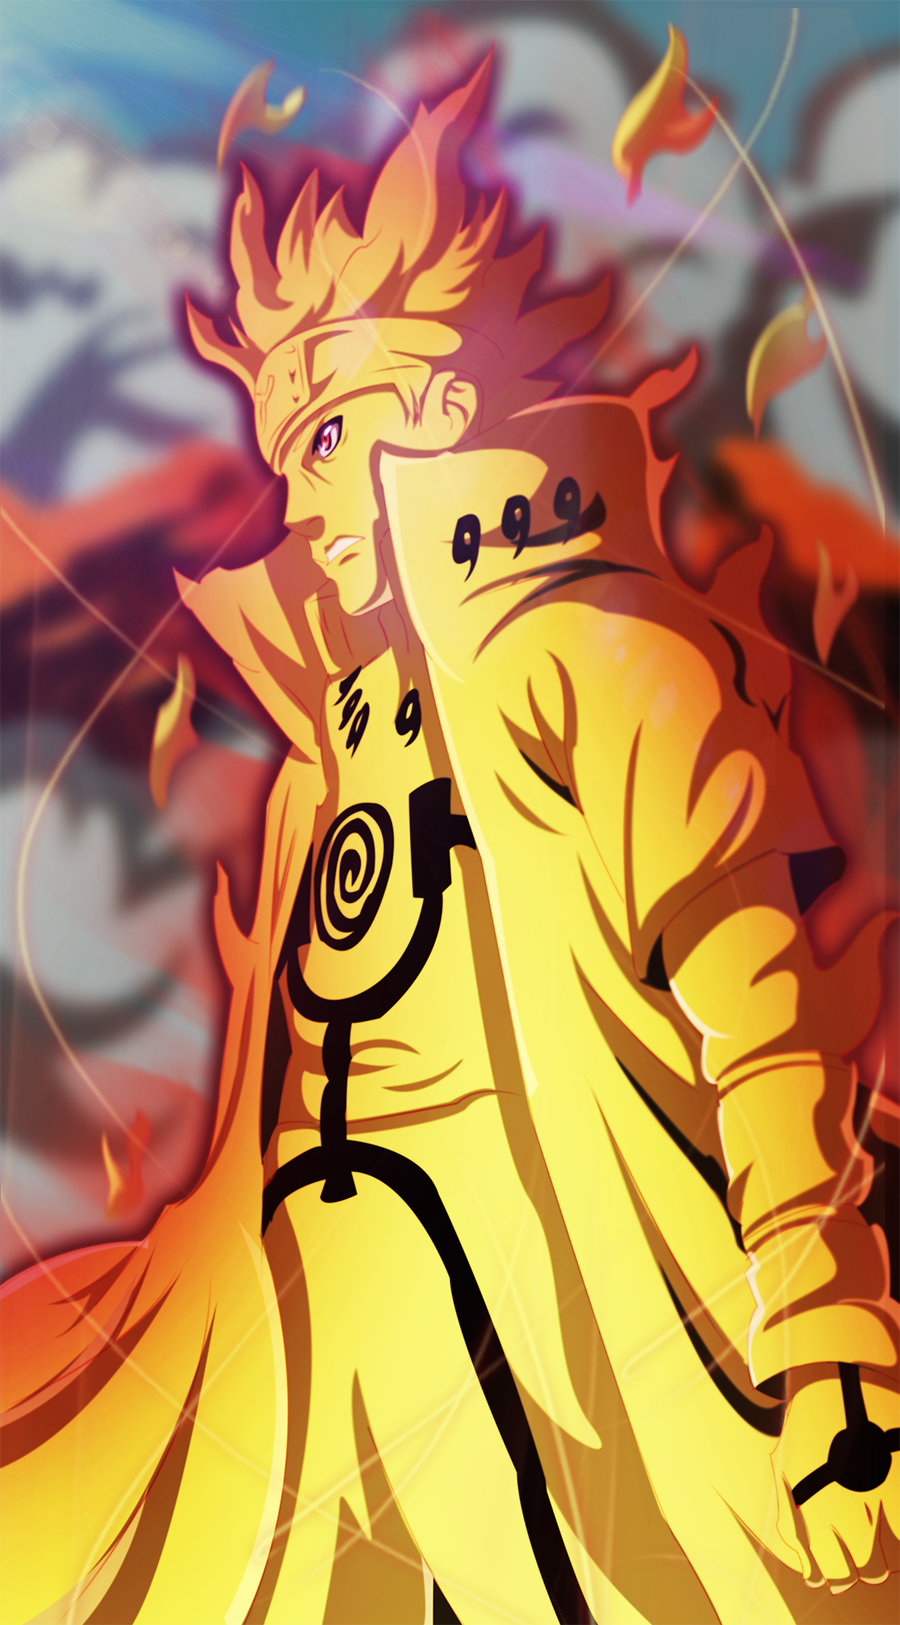 Naruto 631: Minato KCM (atualizado) Por Sensational X No. Naruto Phone Wallpaper, Naruto And Sasuke Wallpaper, Naruto Mobile